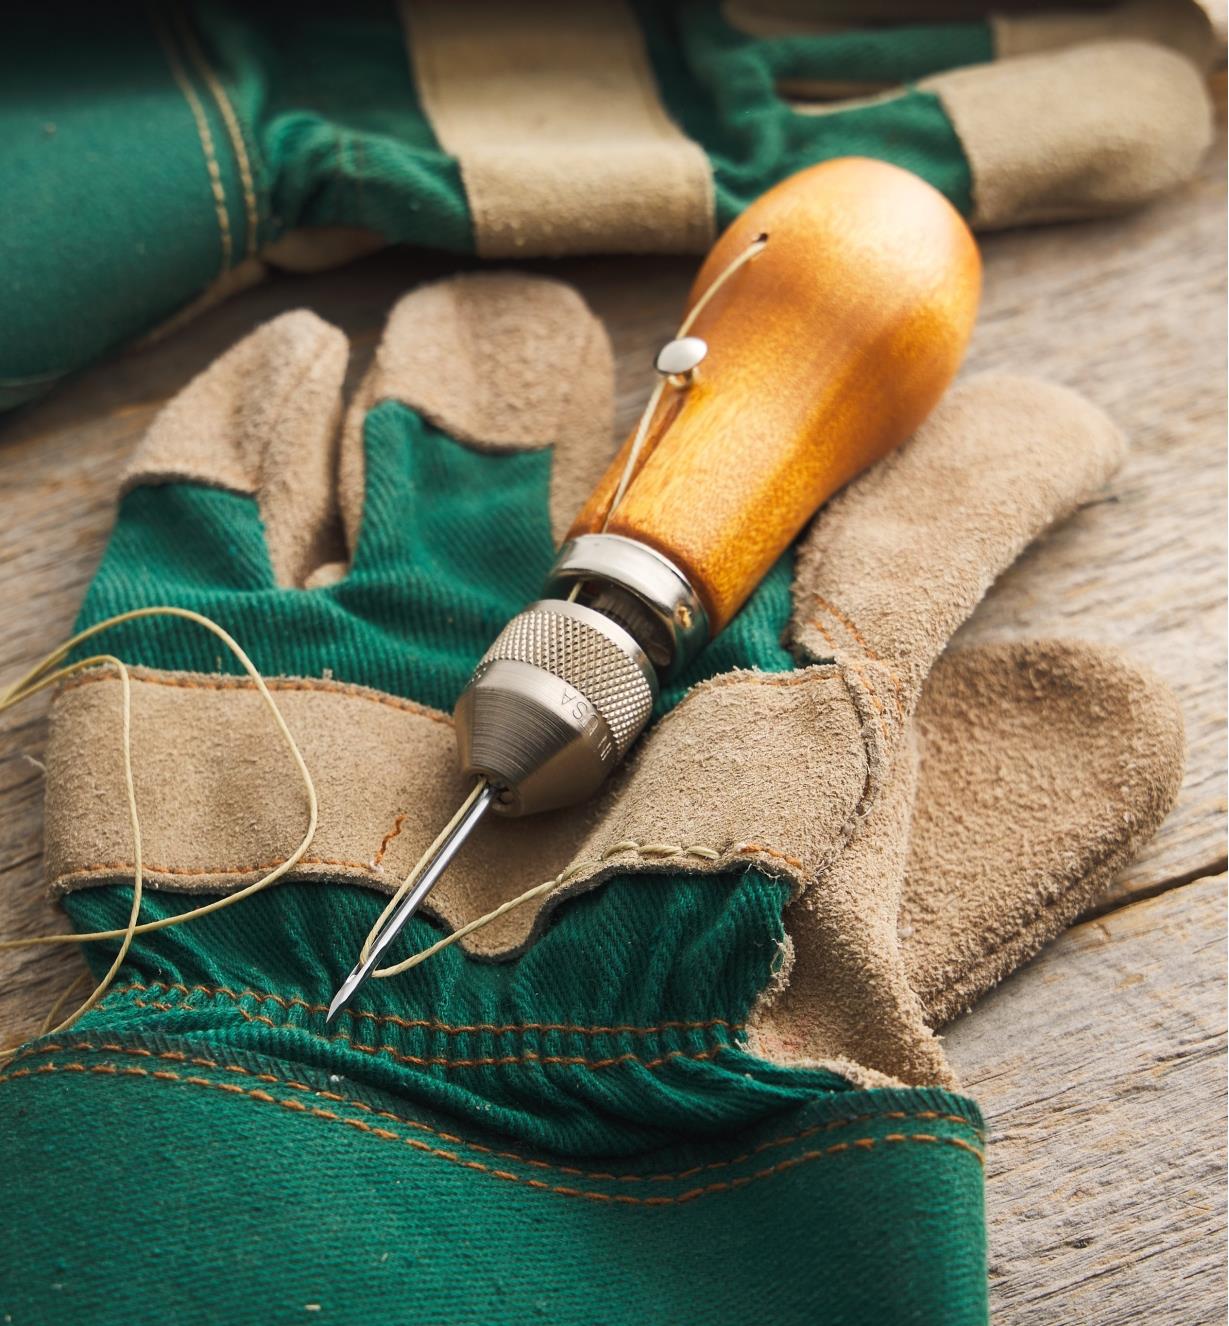 Speedy Stitcher Sewing Kit and work gloves